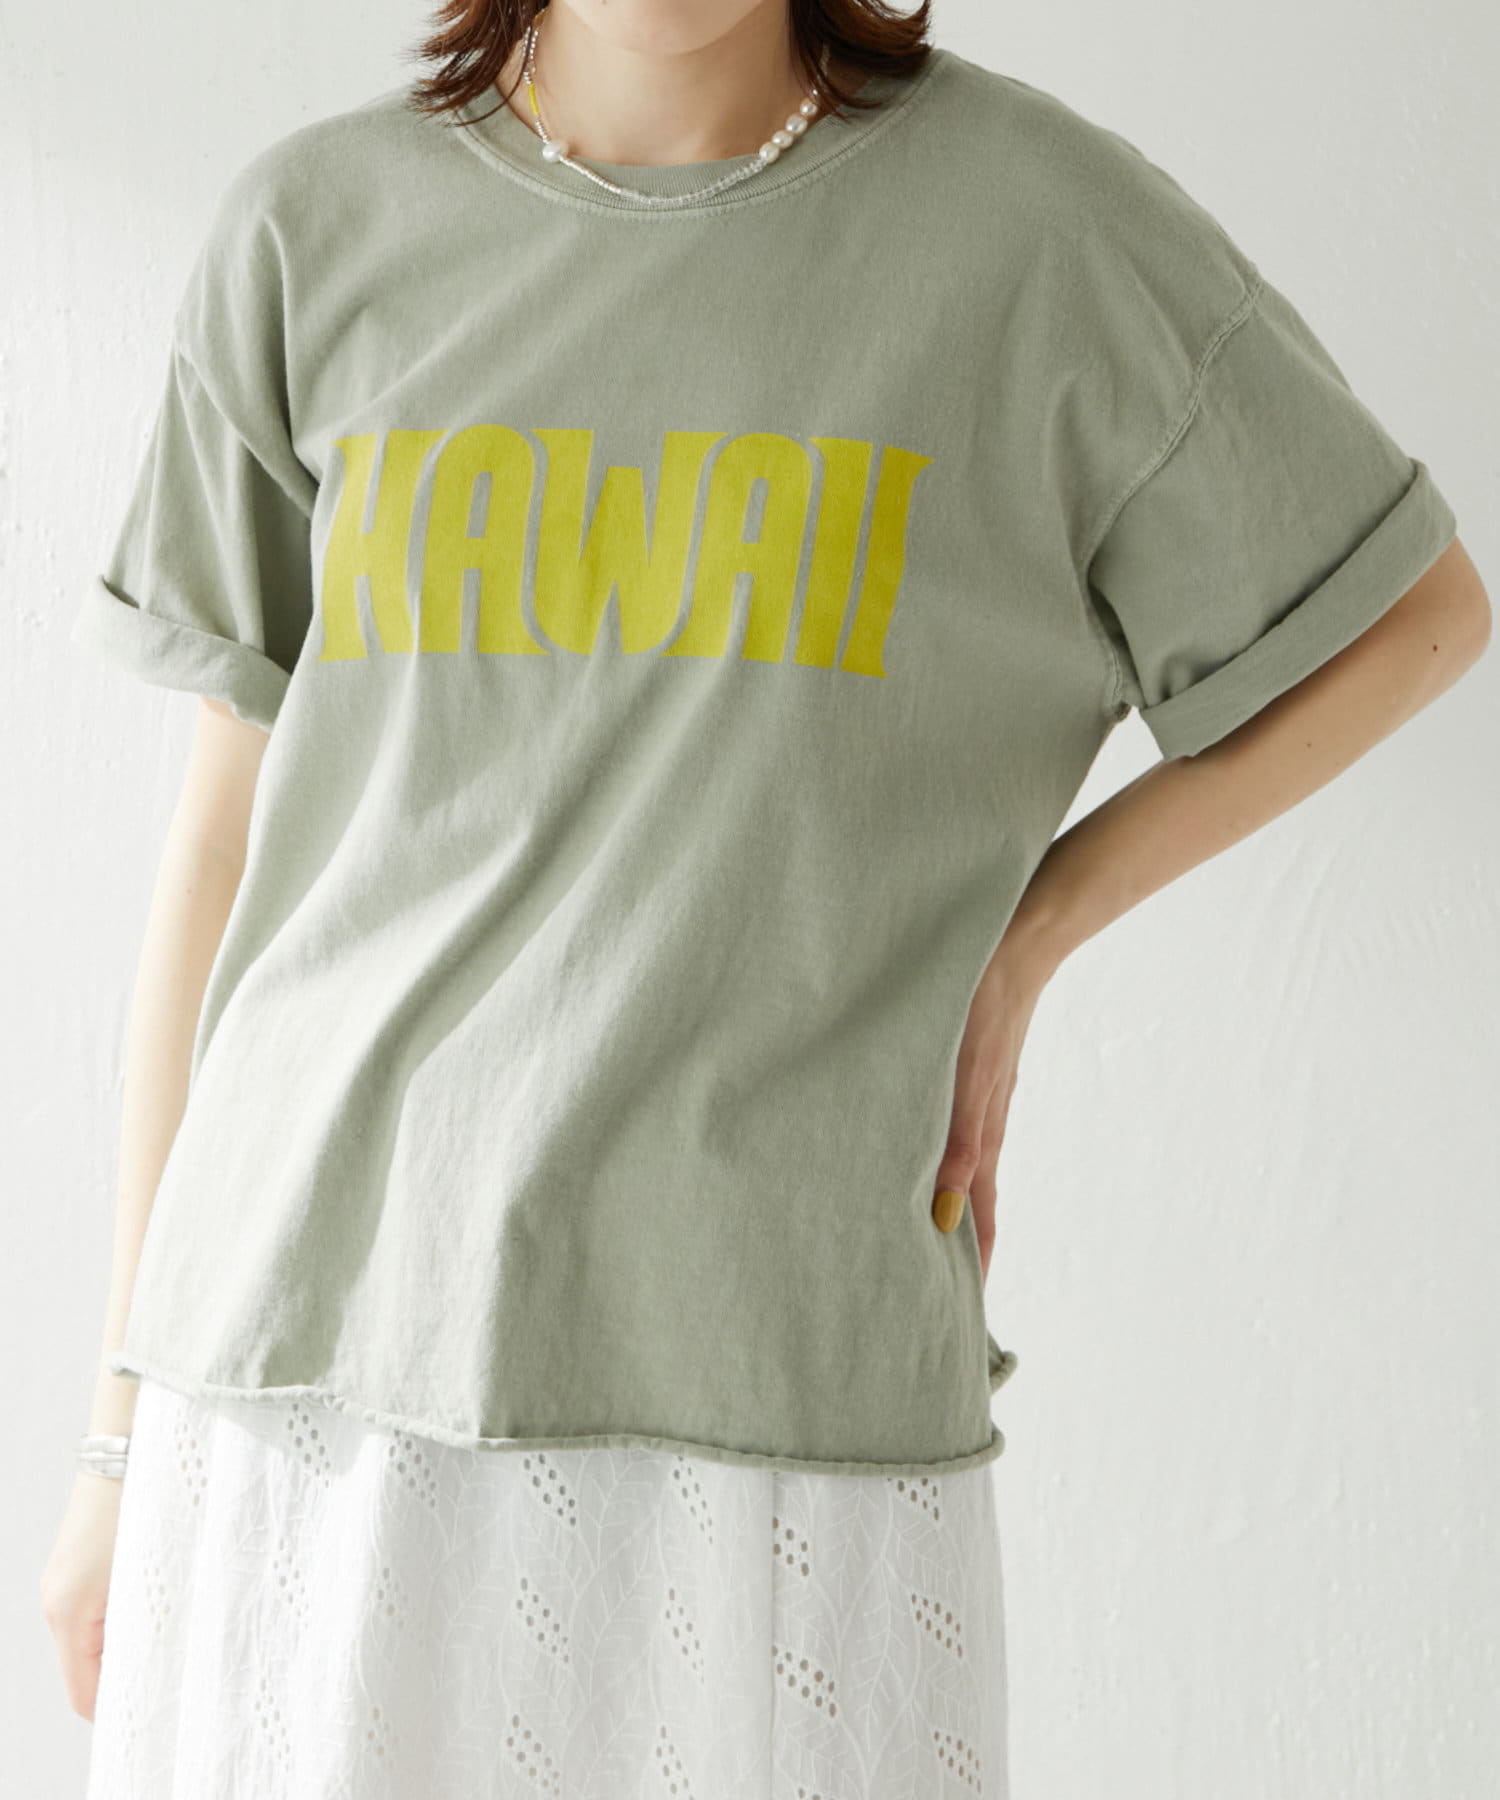 594円 高質で安価 オンザビーチ Tシャツ 全16種 サーフブランド ノベルティ付き メール便対応 T4